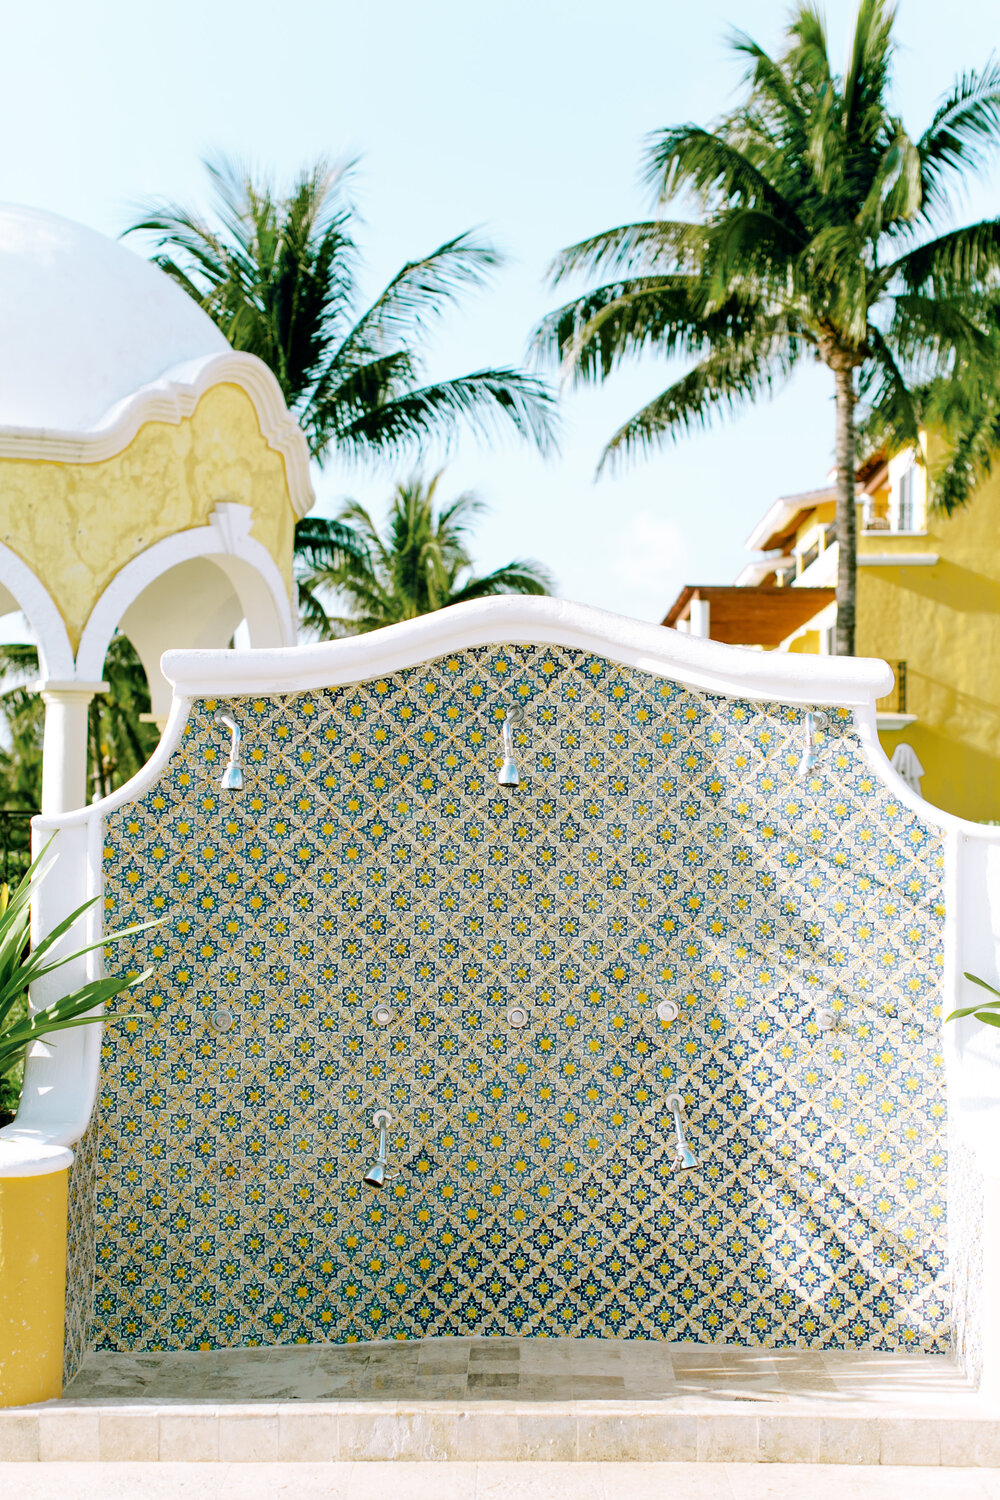 All-Inclusive resort in Cancun, Mexico